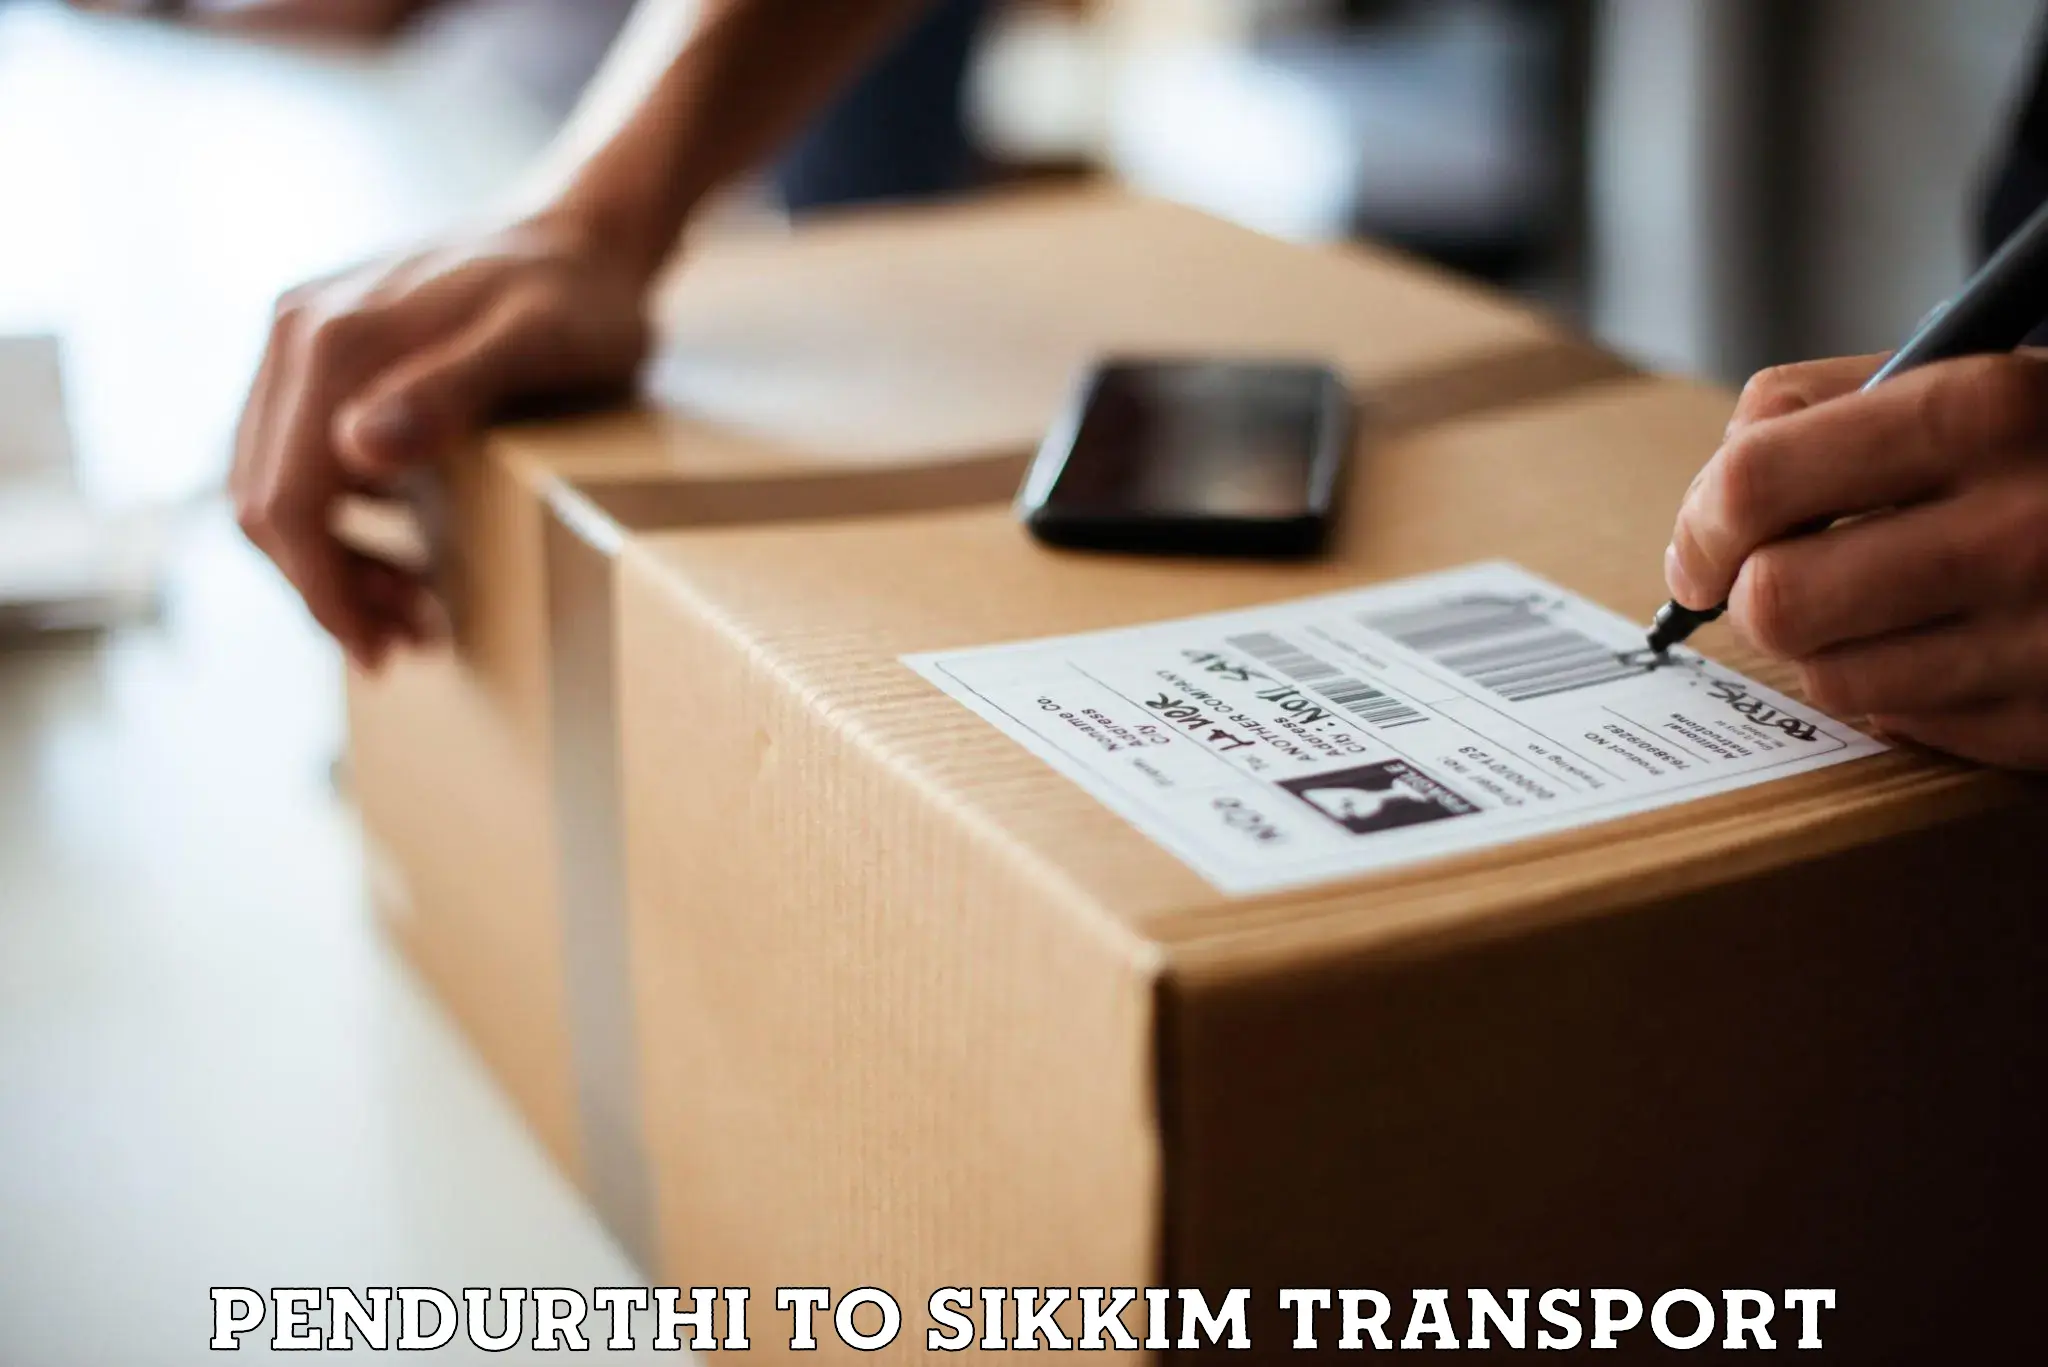 Furniture transport service Pendurthi to Mangan